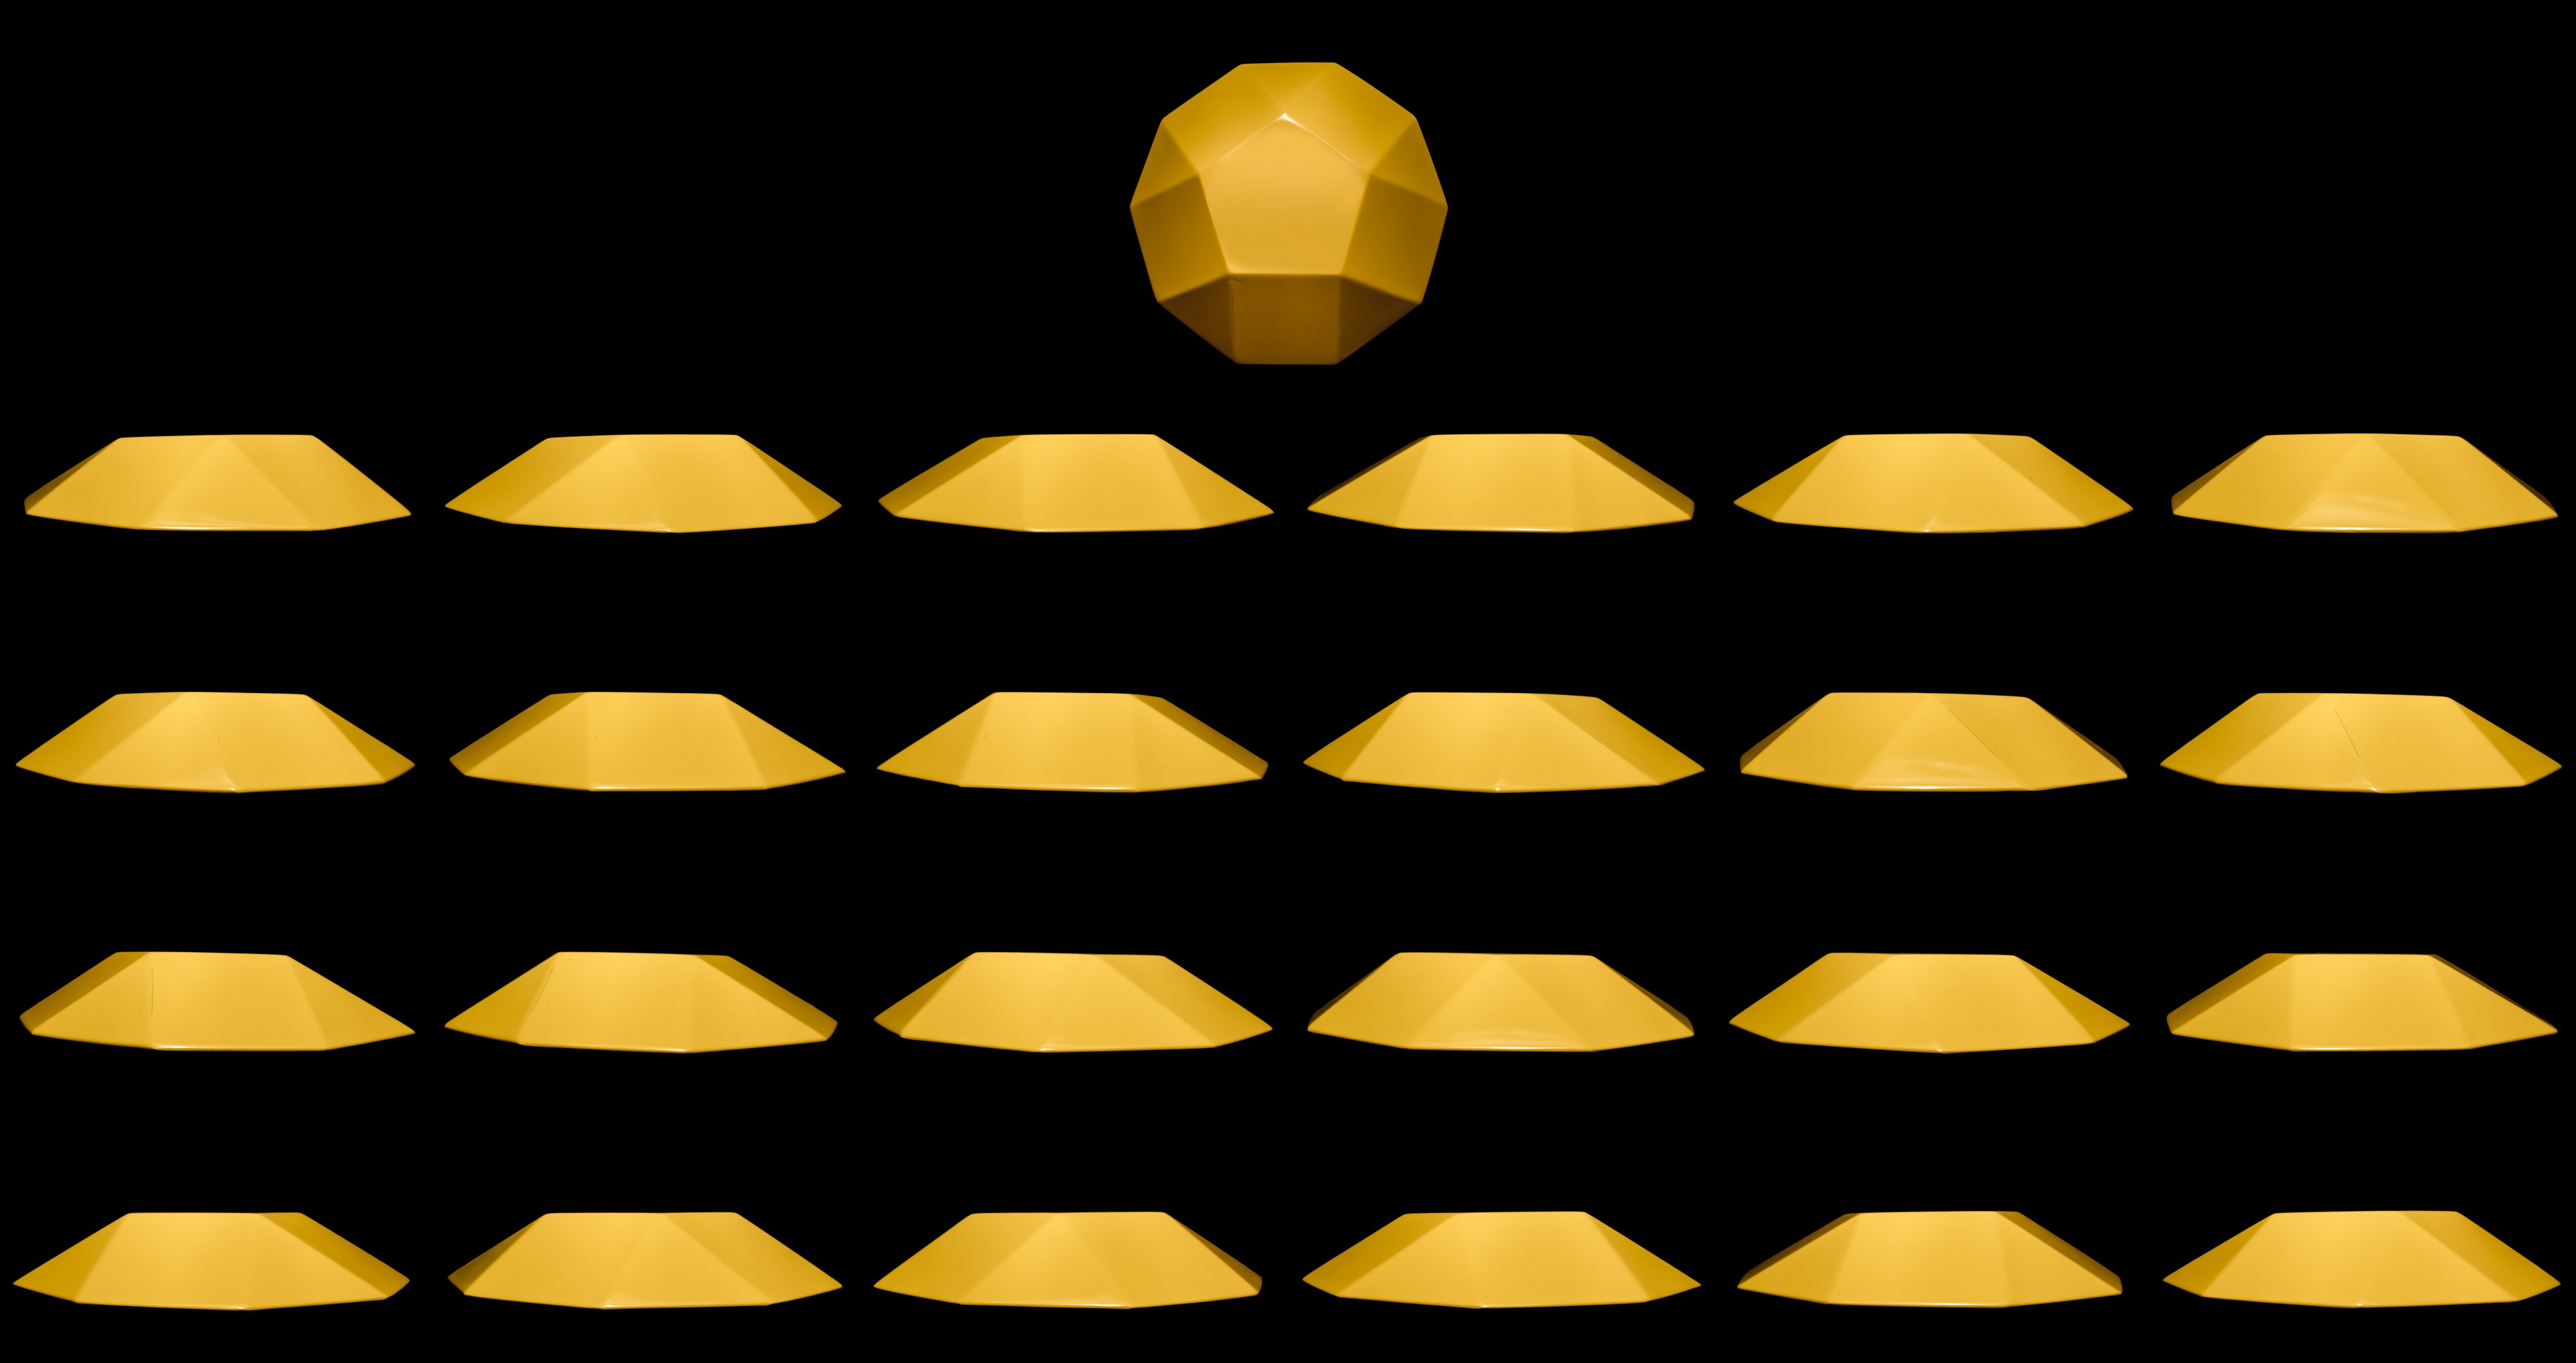 Cúpula pentagonal